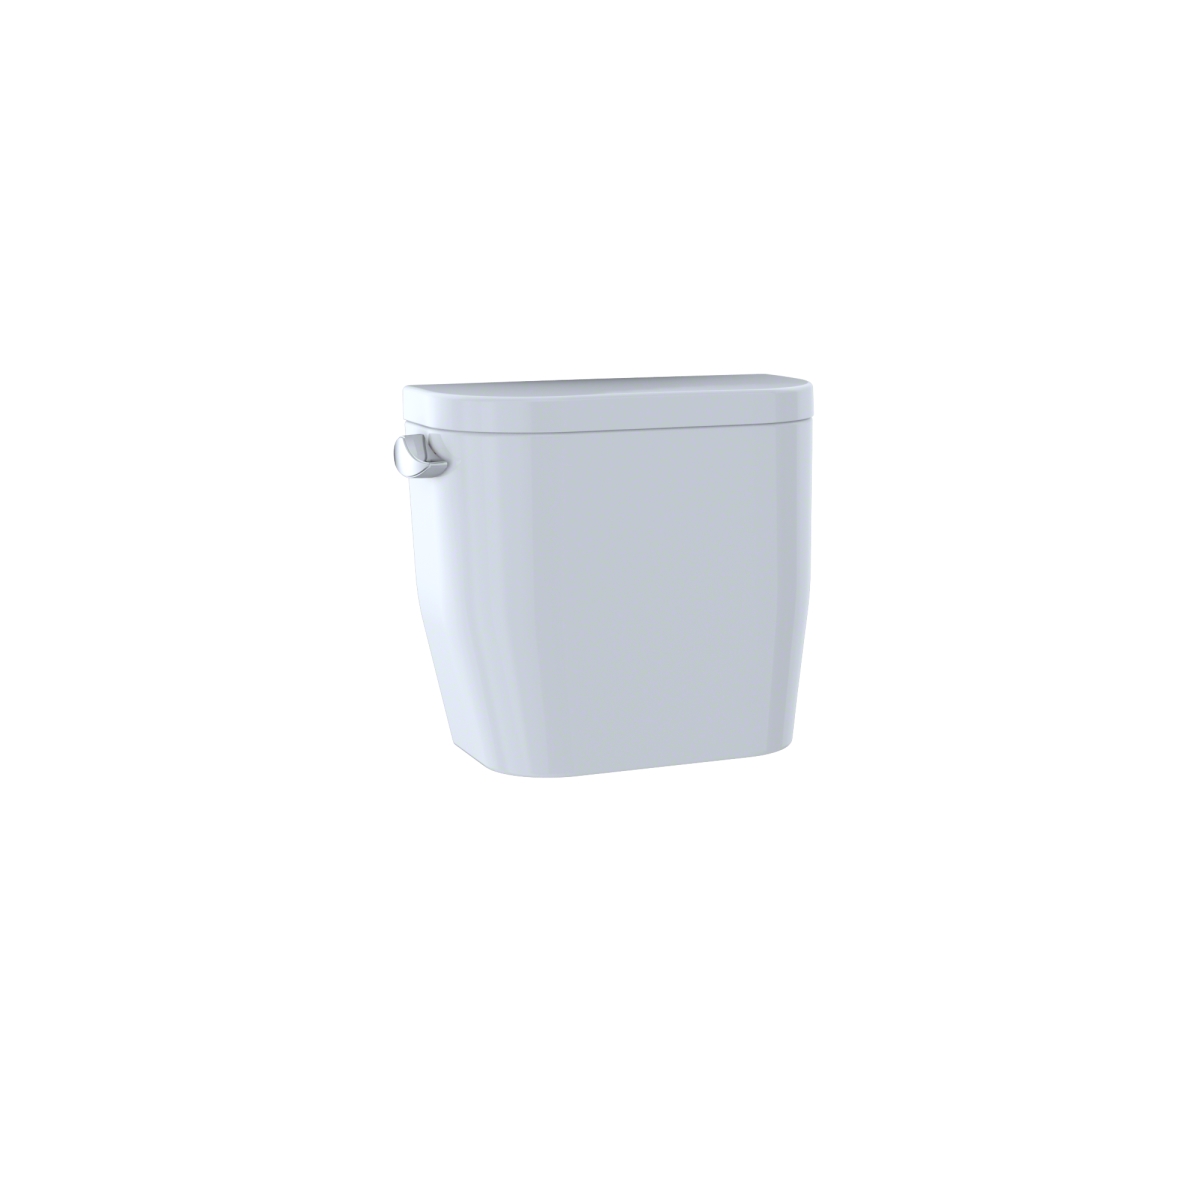 St243eno.01 Entrada E-max 1.28 Gpf Toilet Tank, Cotton White